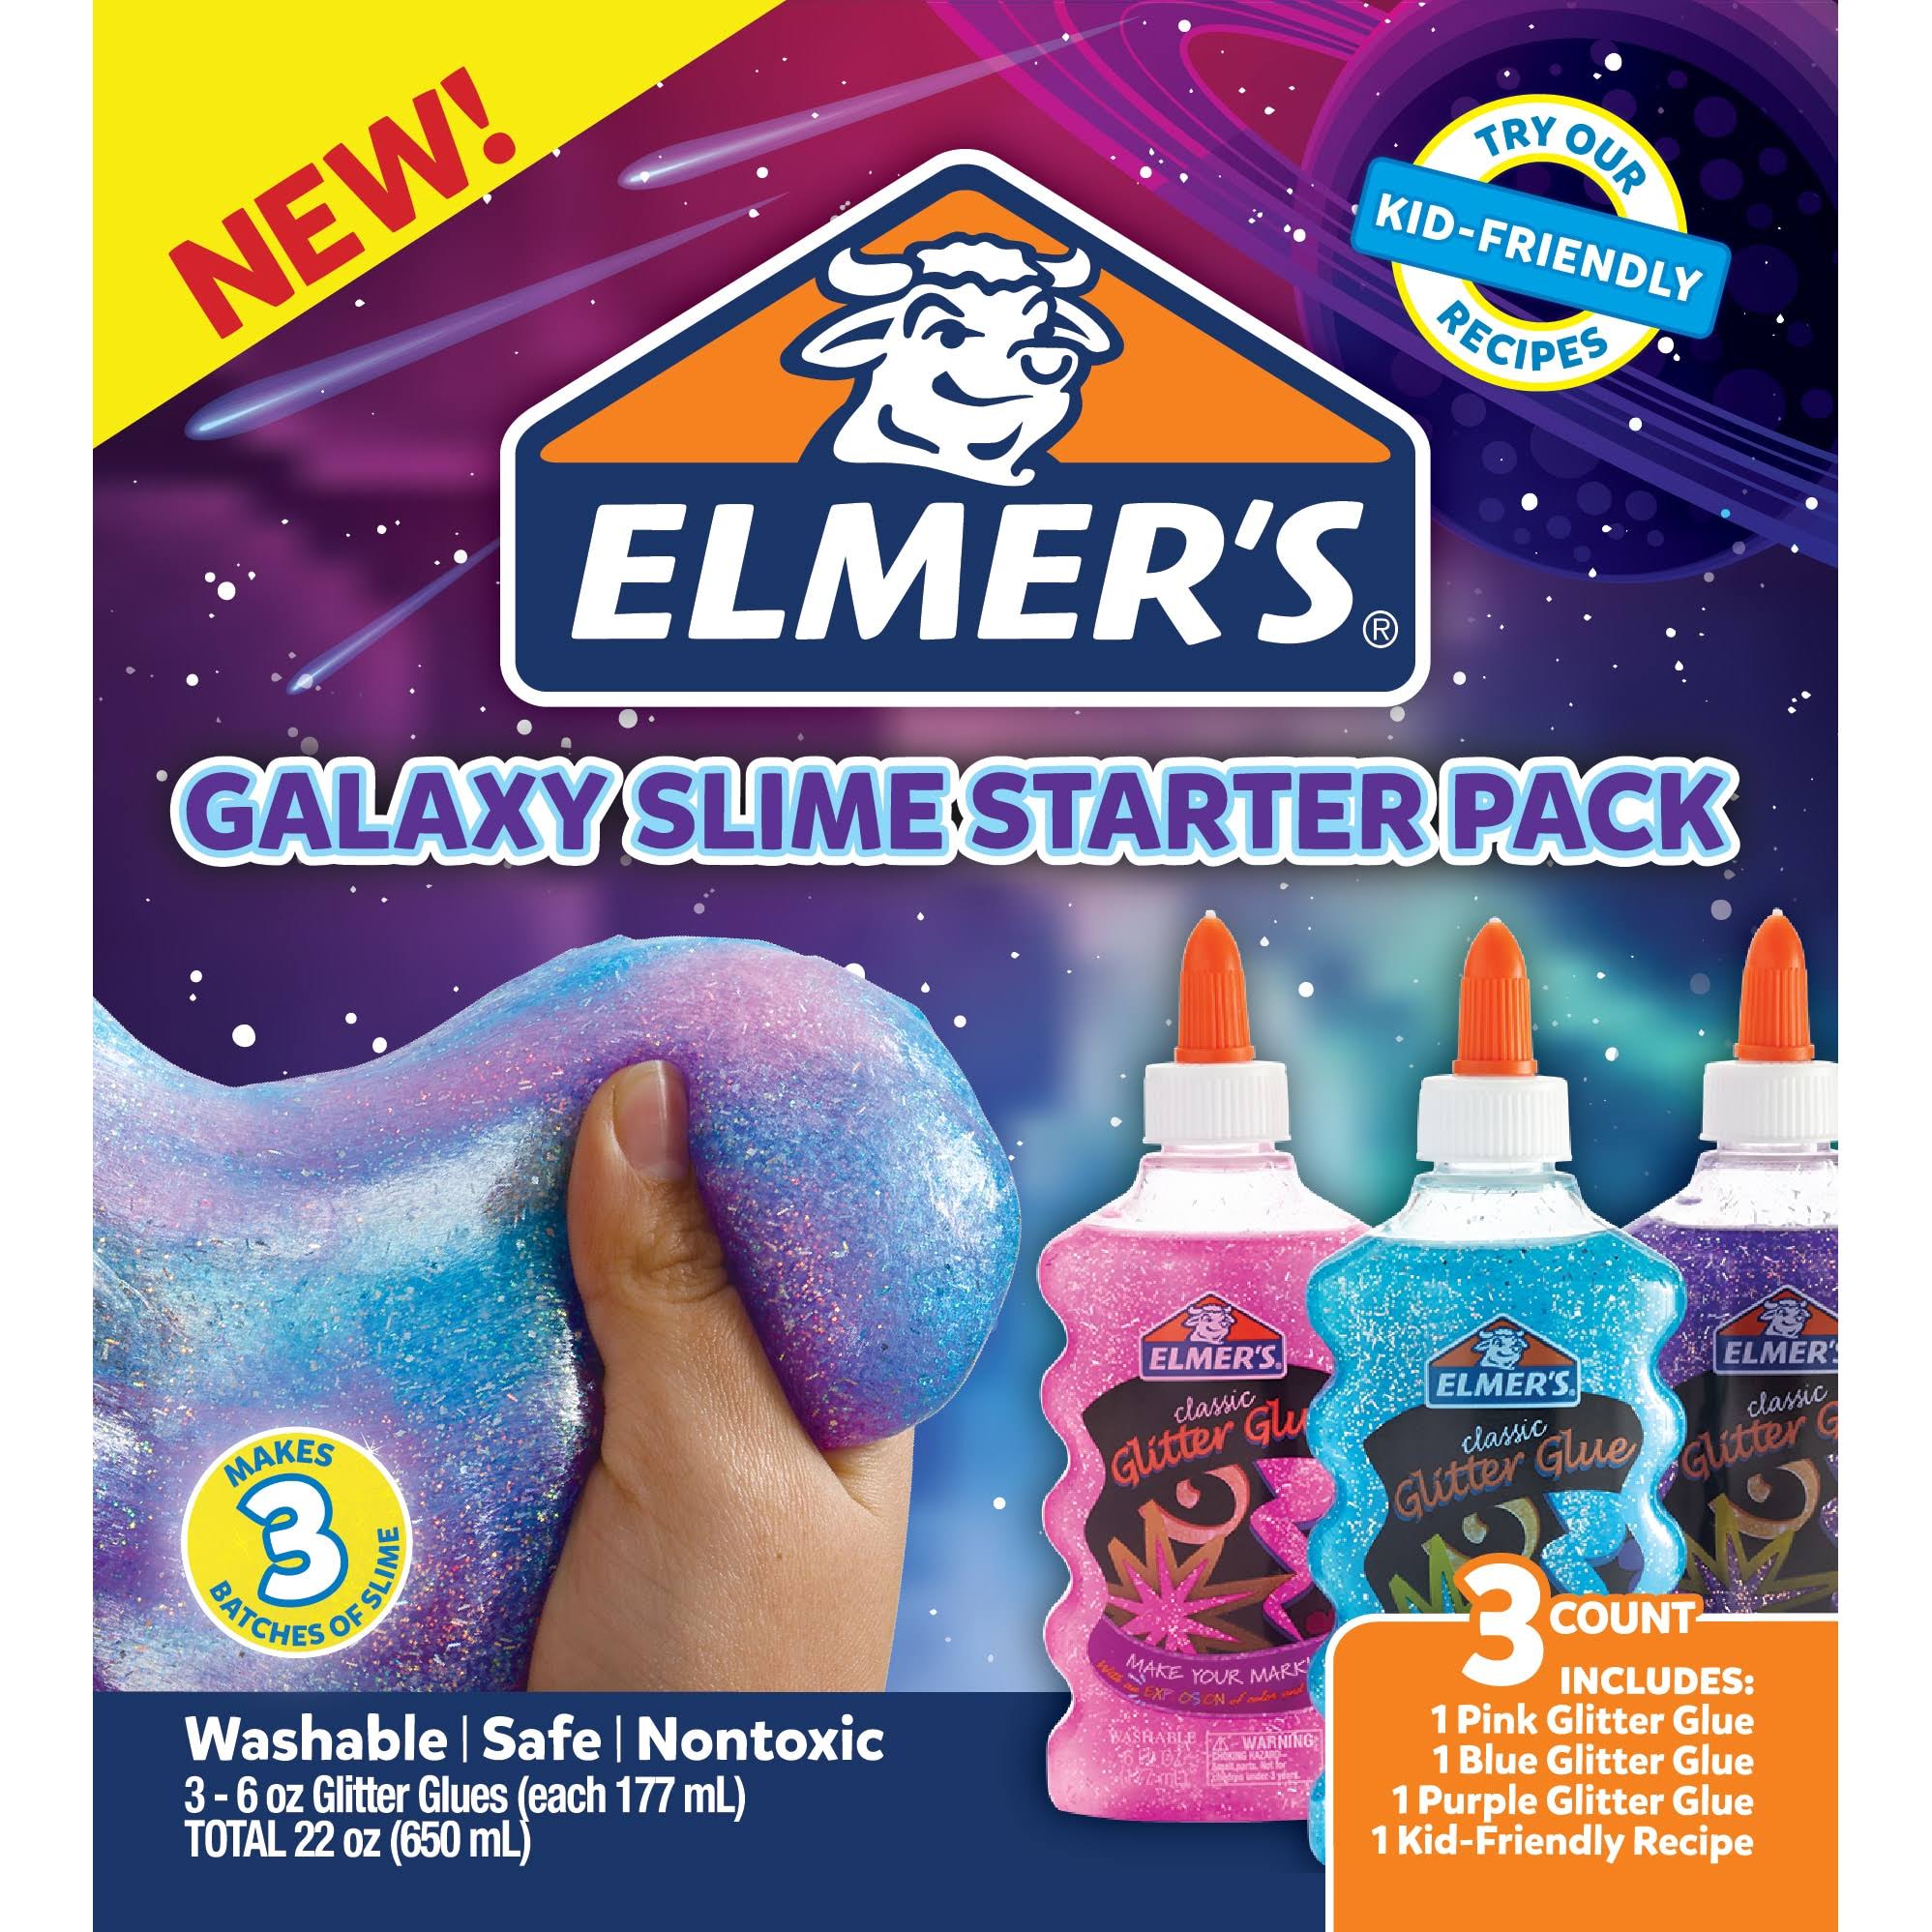 Elmer's Slime Metallic Activator Kit